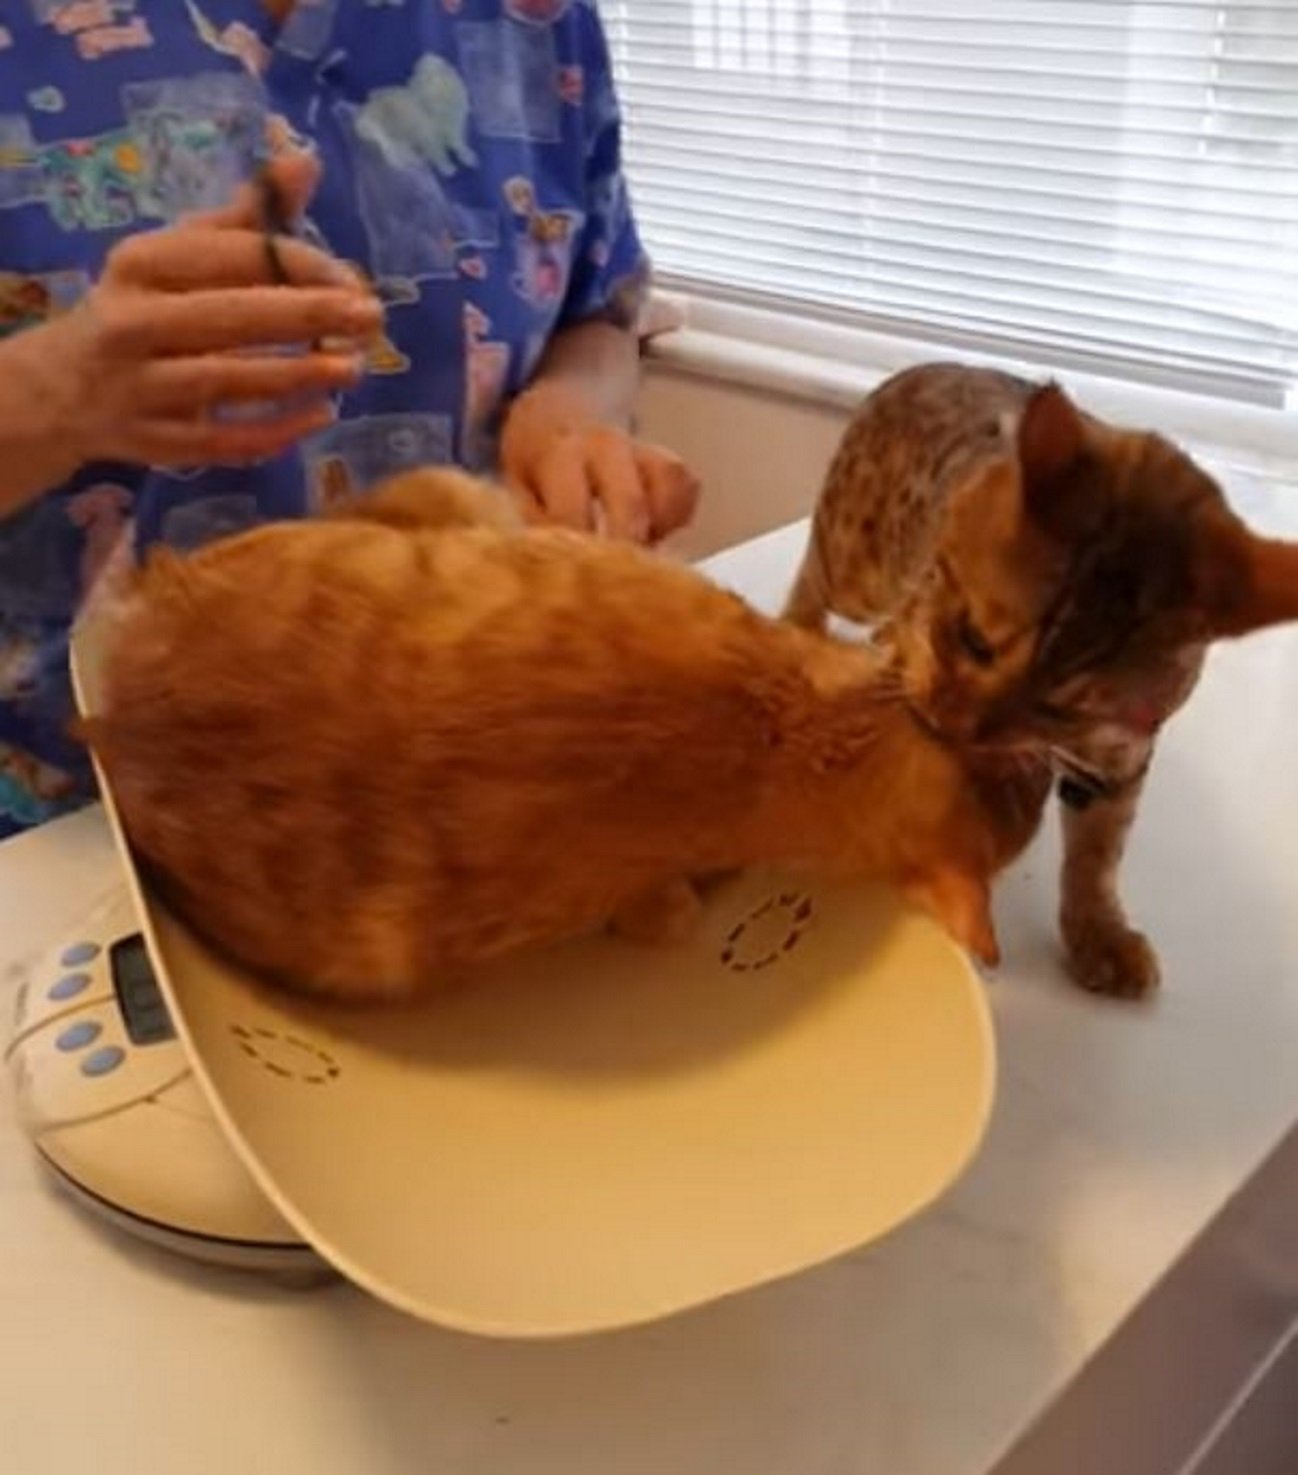 El còmic rescat entre gats per escapar del veterinari